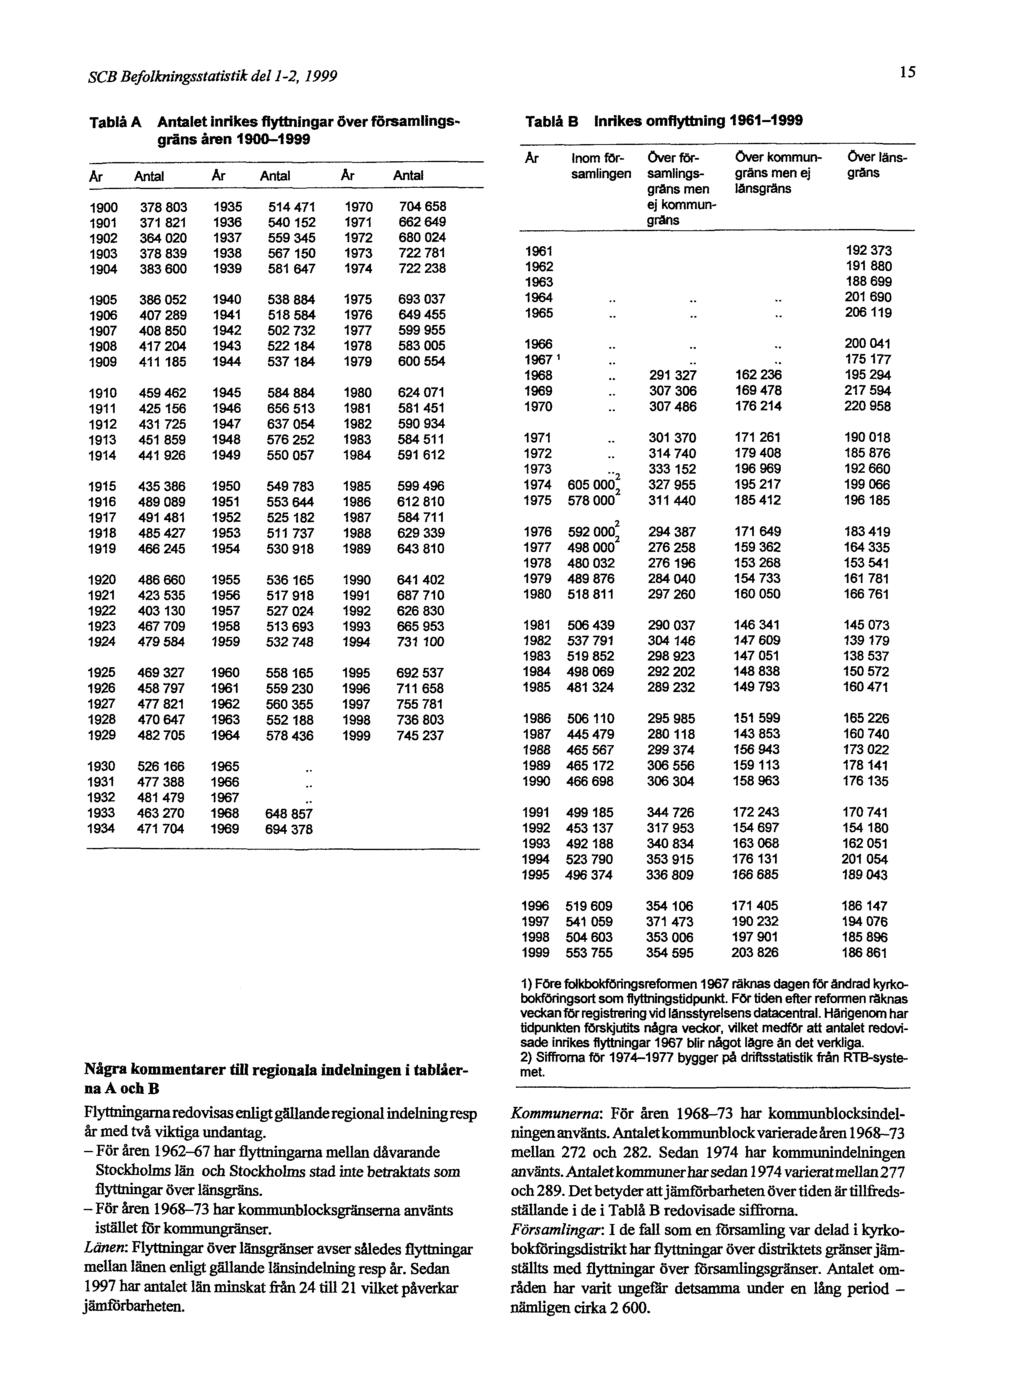 SCB Befolkningsstatistik del 1-2, 1999 15 Tablå A Antalet inrikes flyttningar över församlingsgräns åren 1900-1999 Tablå B Inrikes omflyttning 1961-1999 Några kommentarer till regionala indelningen i